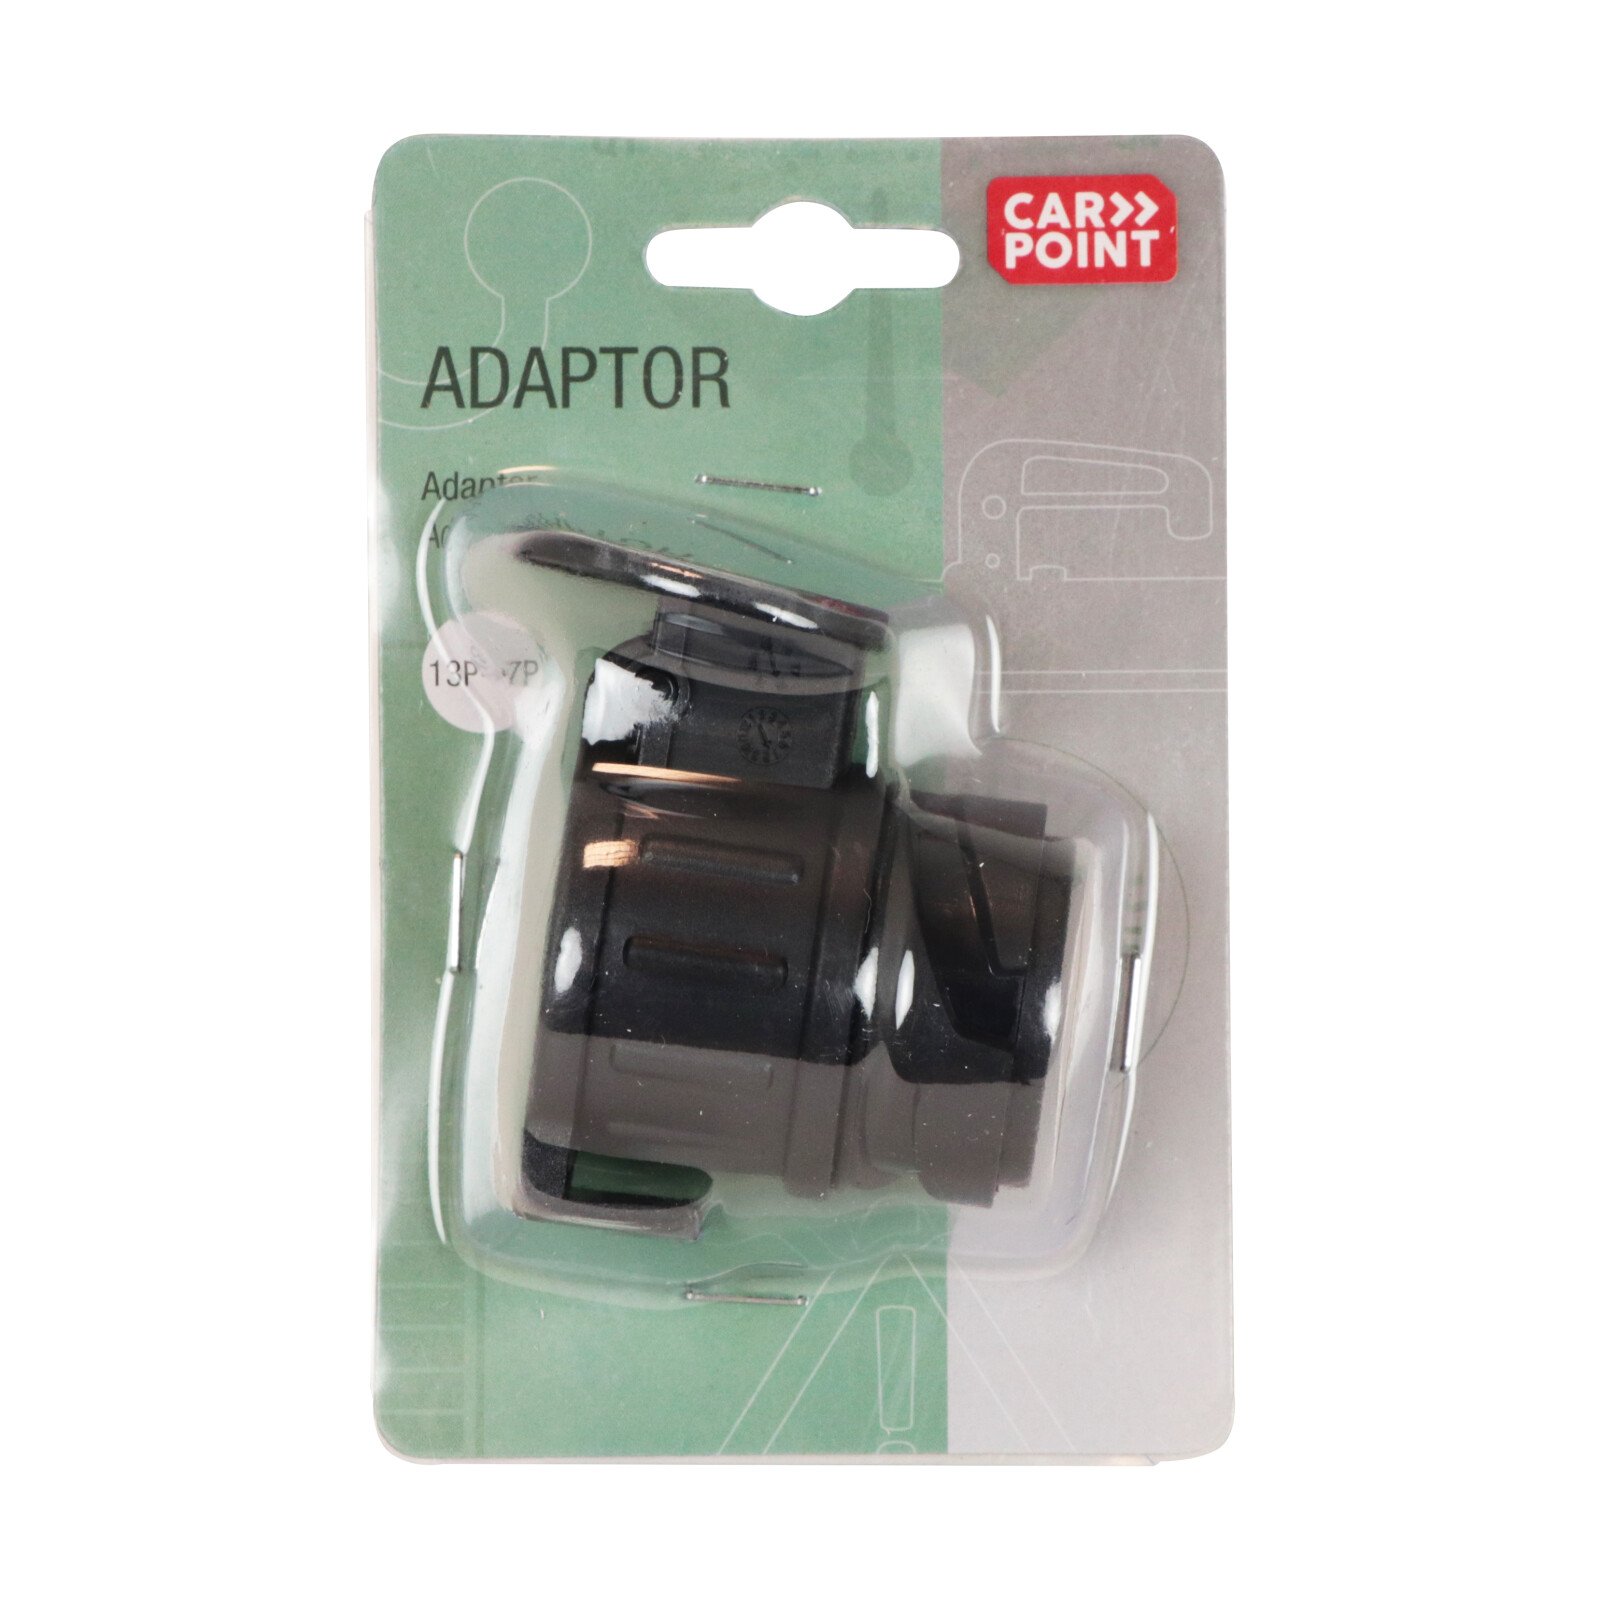 Carpoint rövid utánfutó adapter 13-rol 7 pólusra thumb